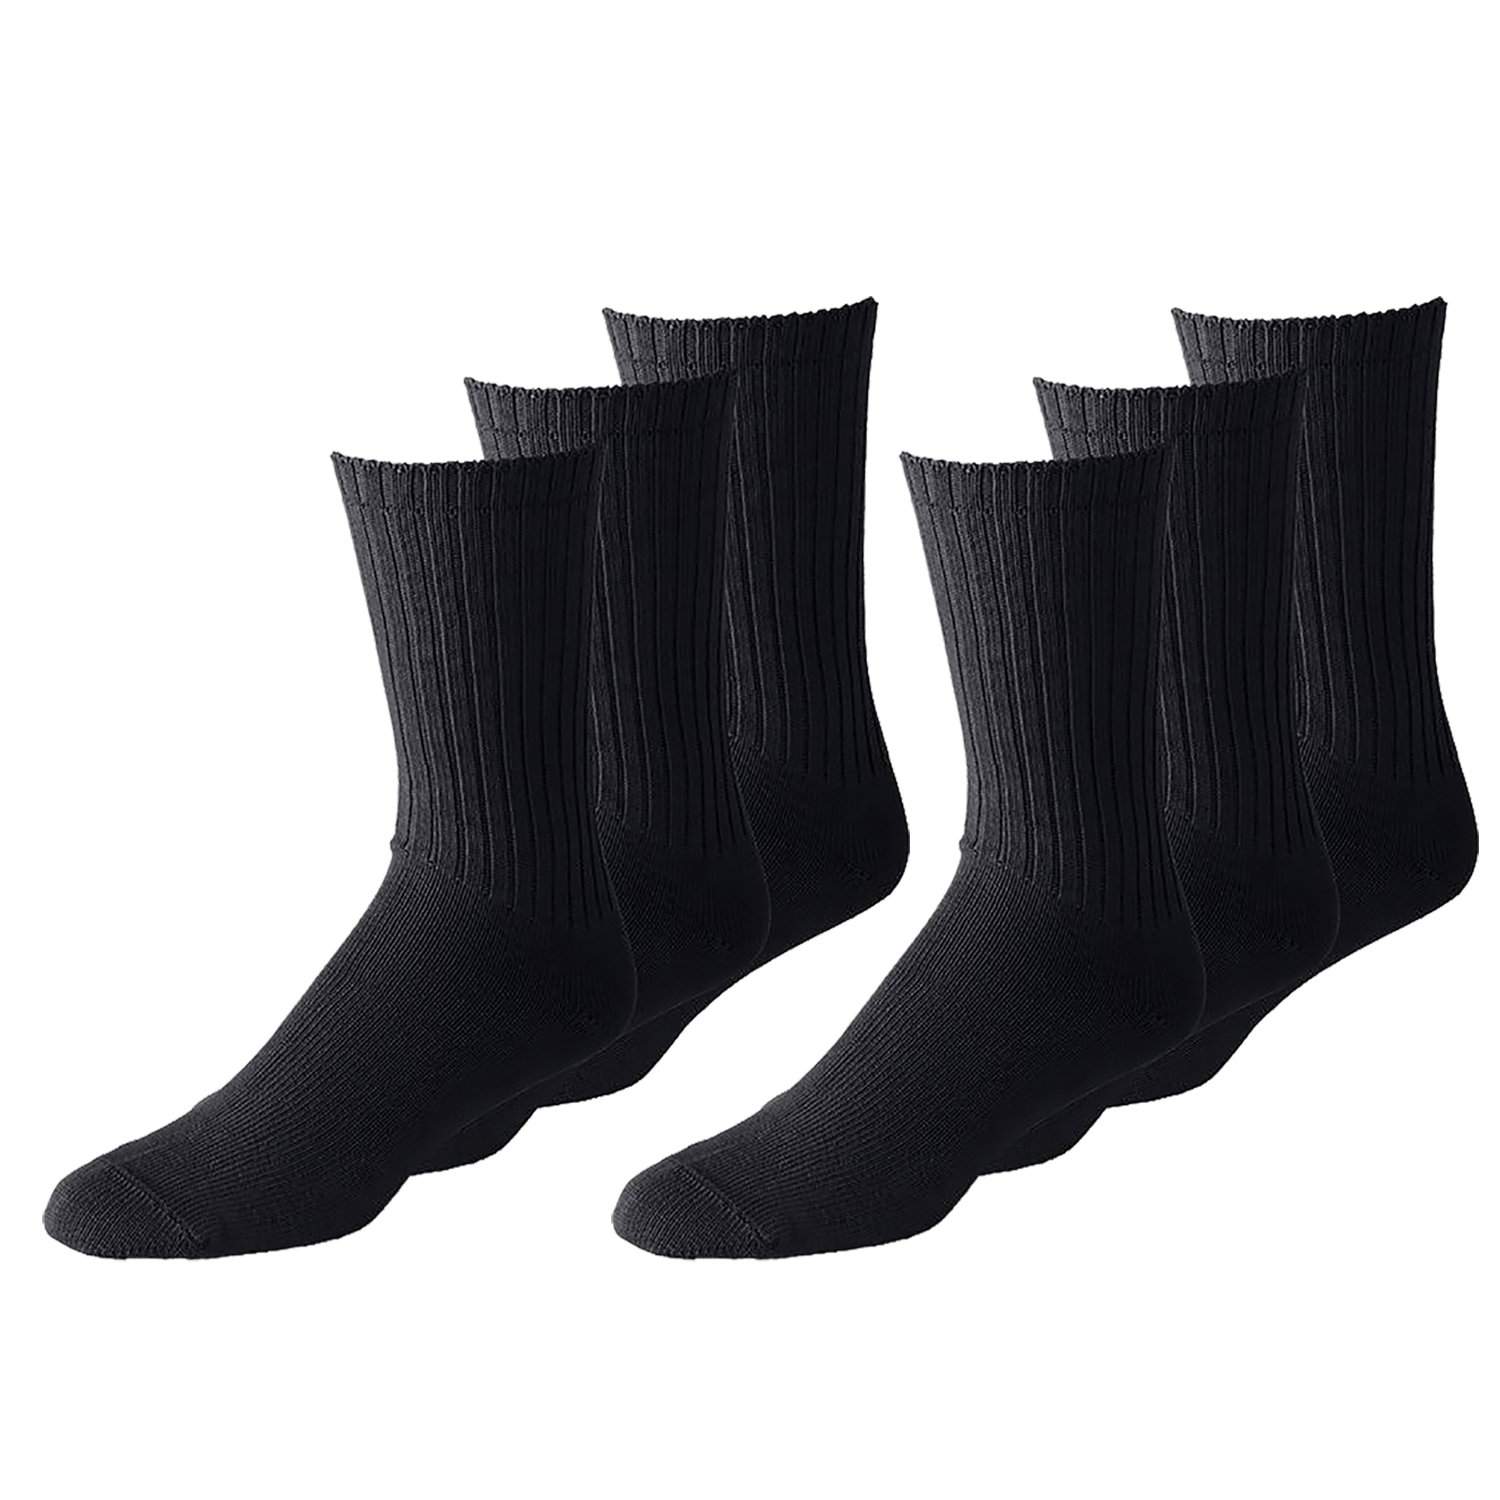 Men's Crew Socks, 10-Pack 